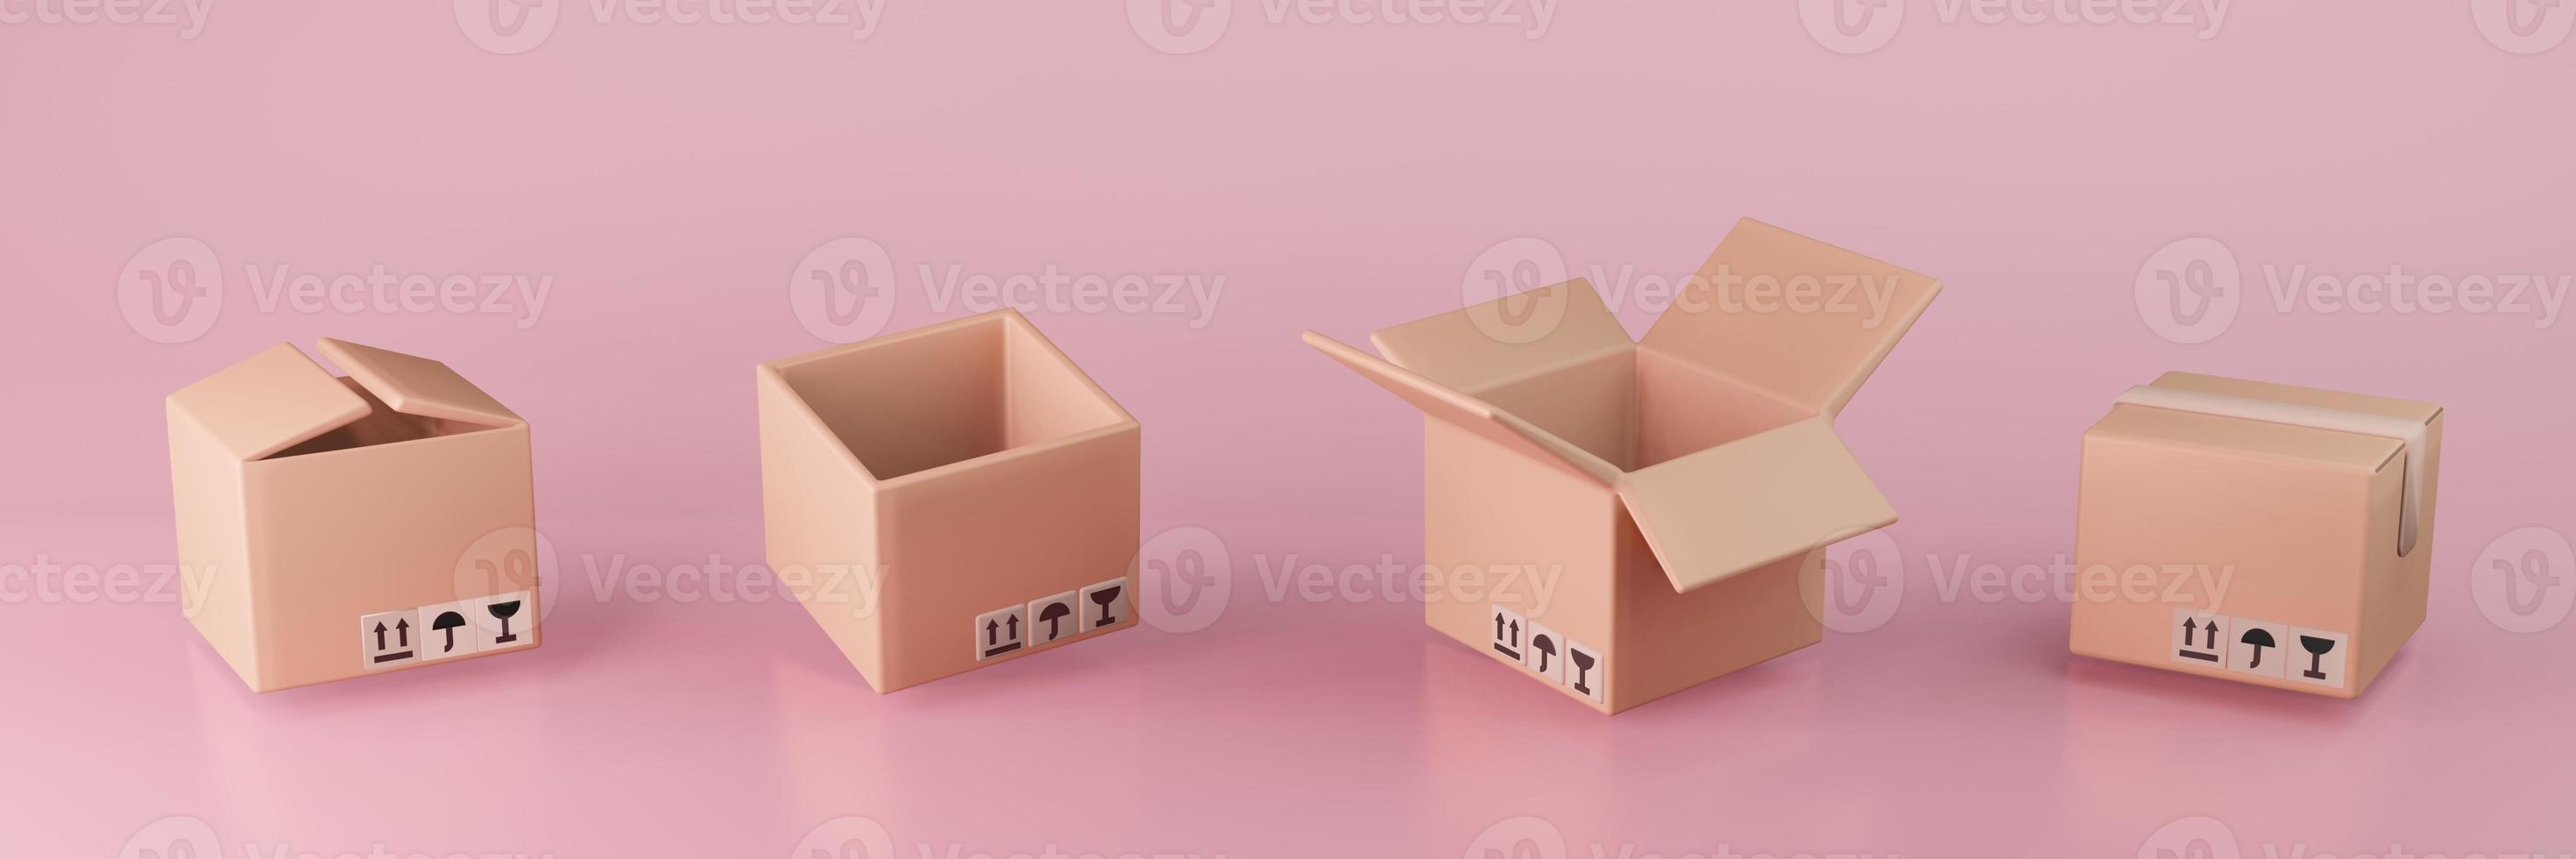 ensemble de boîtes en carton illustration 3d livraison emballage et transport expédition stockage logistique sur fond rose photo